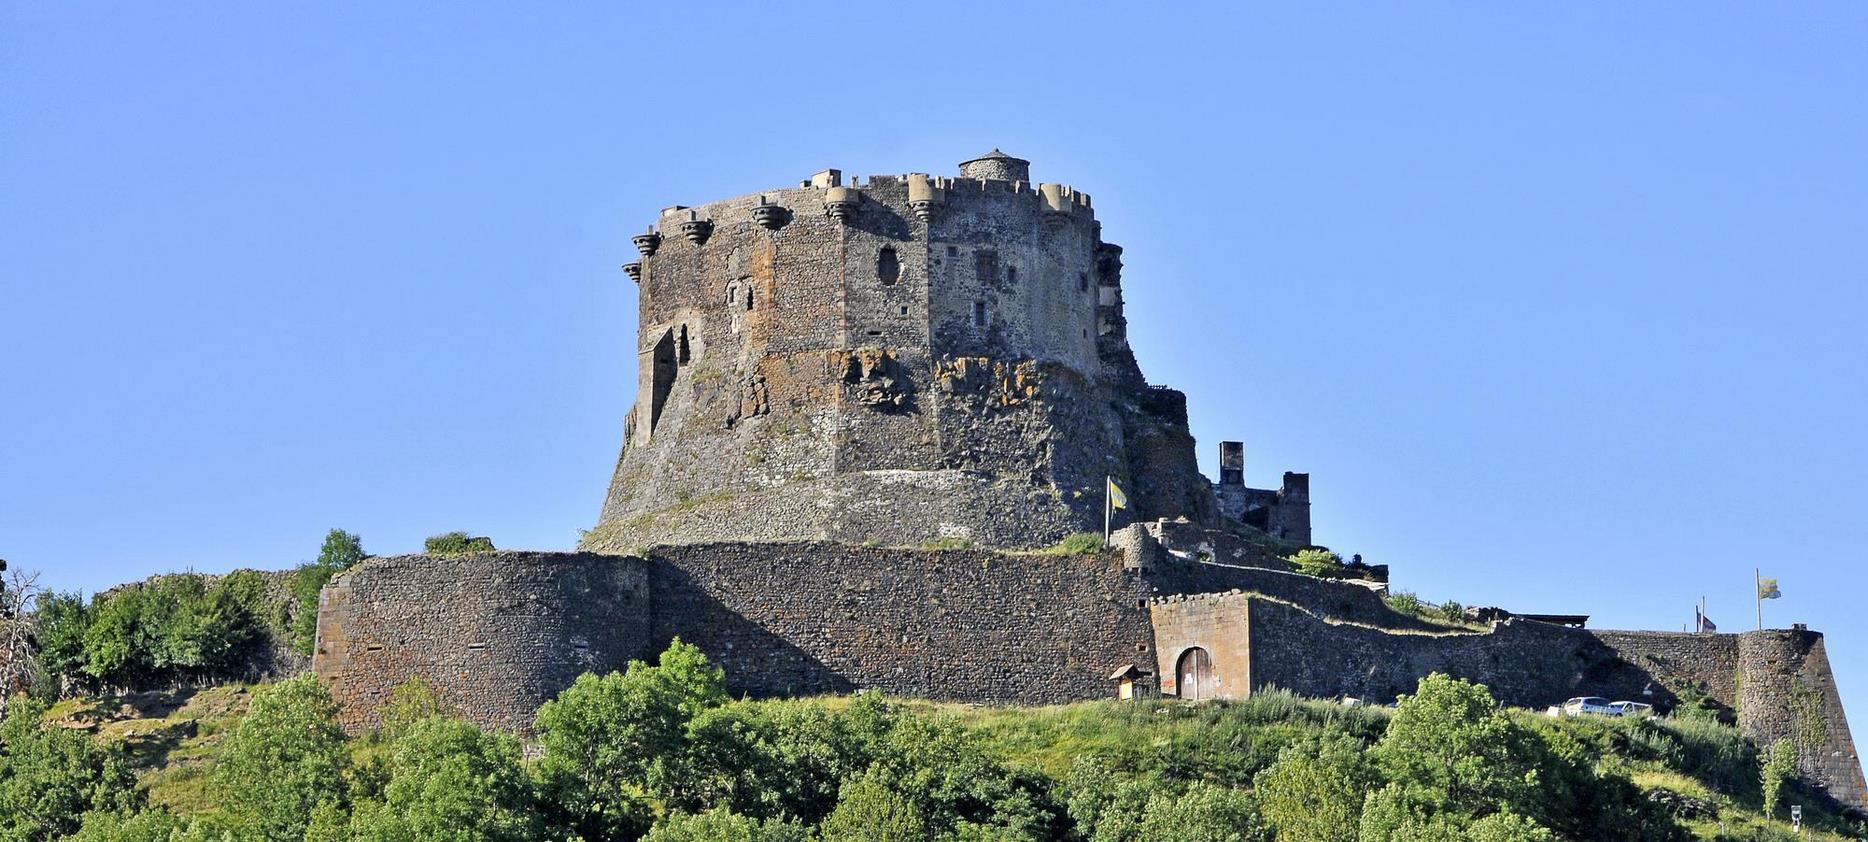 Château de Murol - Fortress of the Middle Ages in the Puy de Dôme